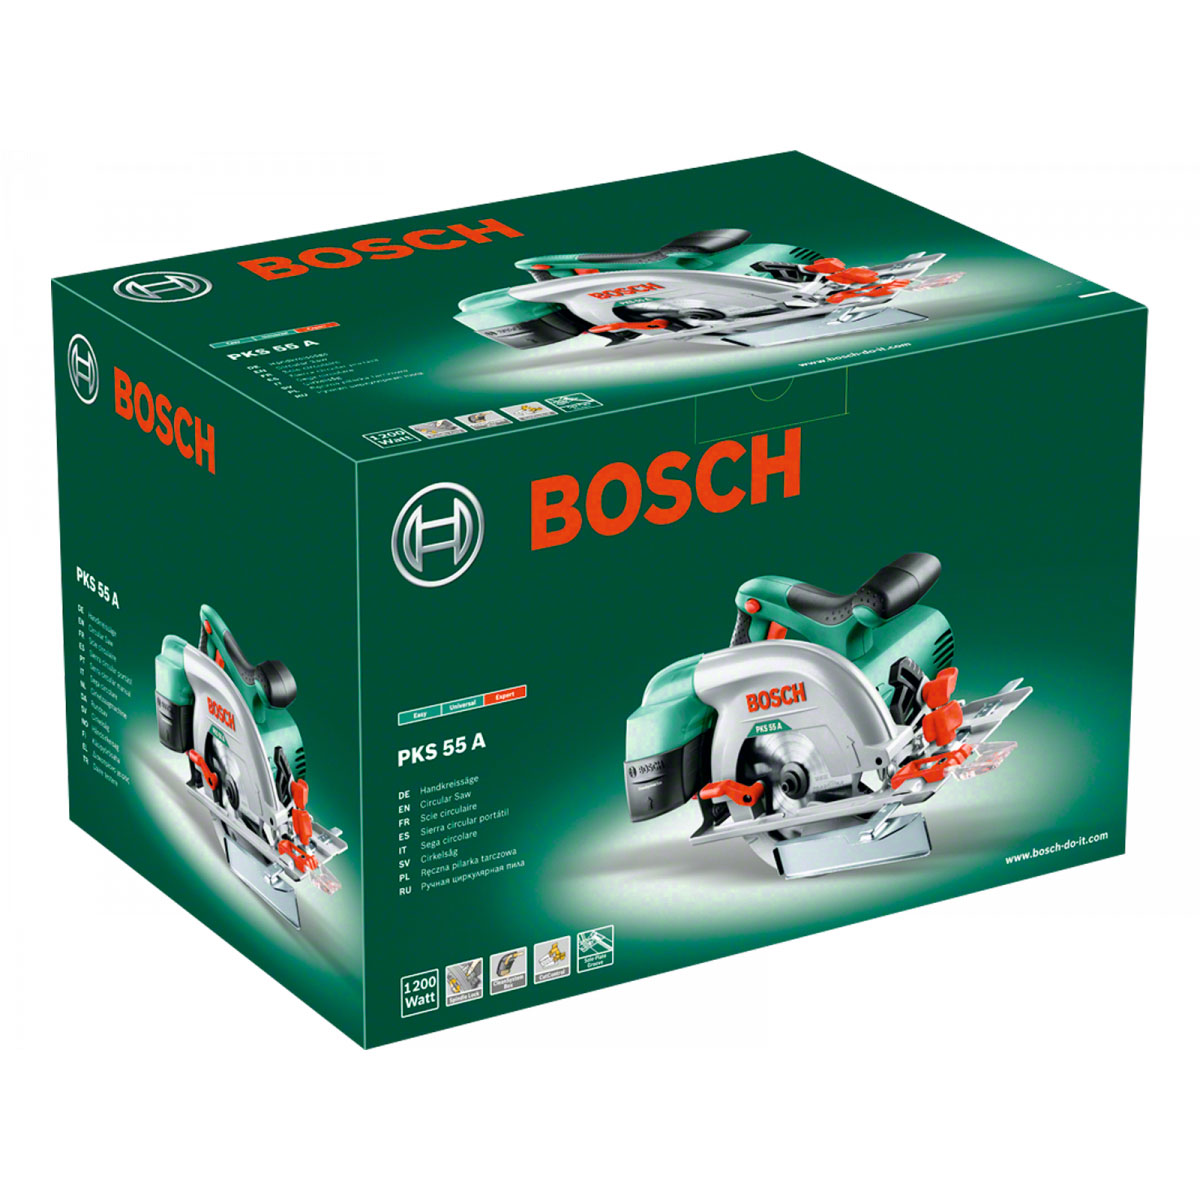 Пила циркулярная bosch pks. Циркулярная пила Bosch PKS 55. Bosch пила циркулярная PKS 55 (0603500020). Дисковая пила Bosch PKS 55, 1200. Пила дисковая (циркулярная) Bosch PKS 55.